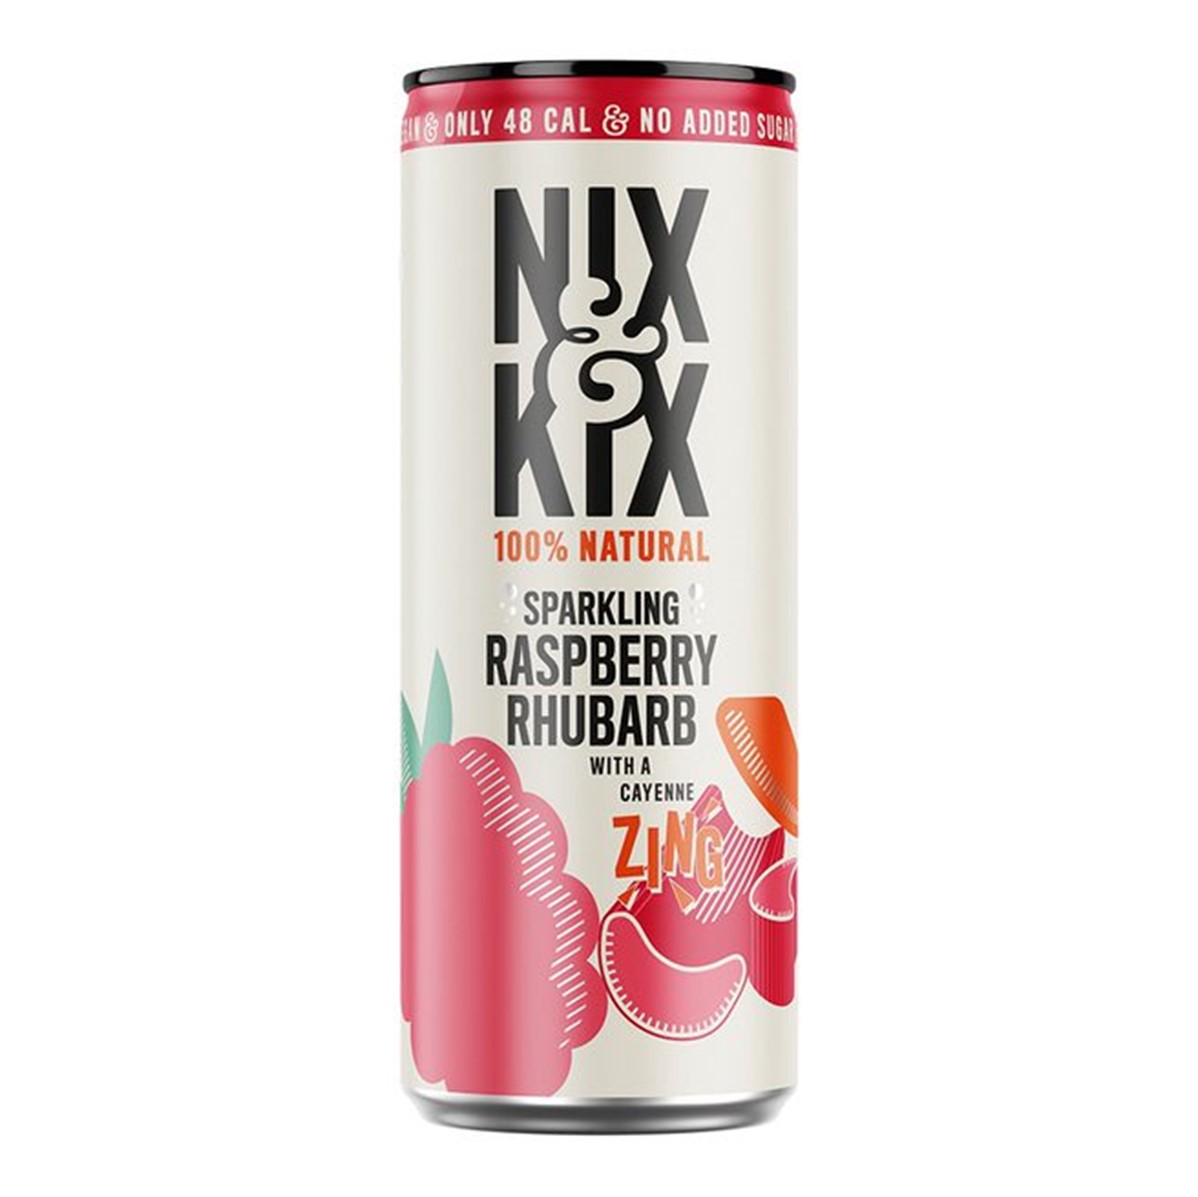 Nix & Kix Raspberry & Rhubarb - 24x250ml cans